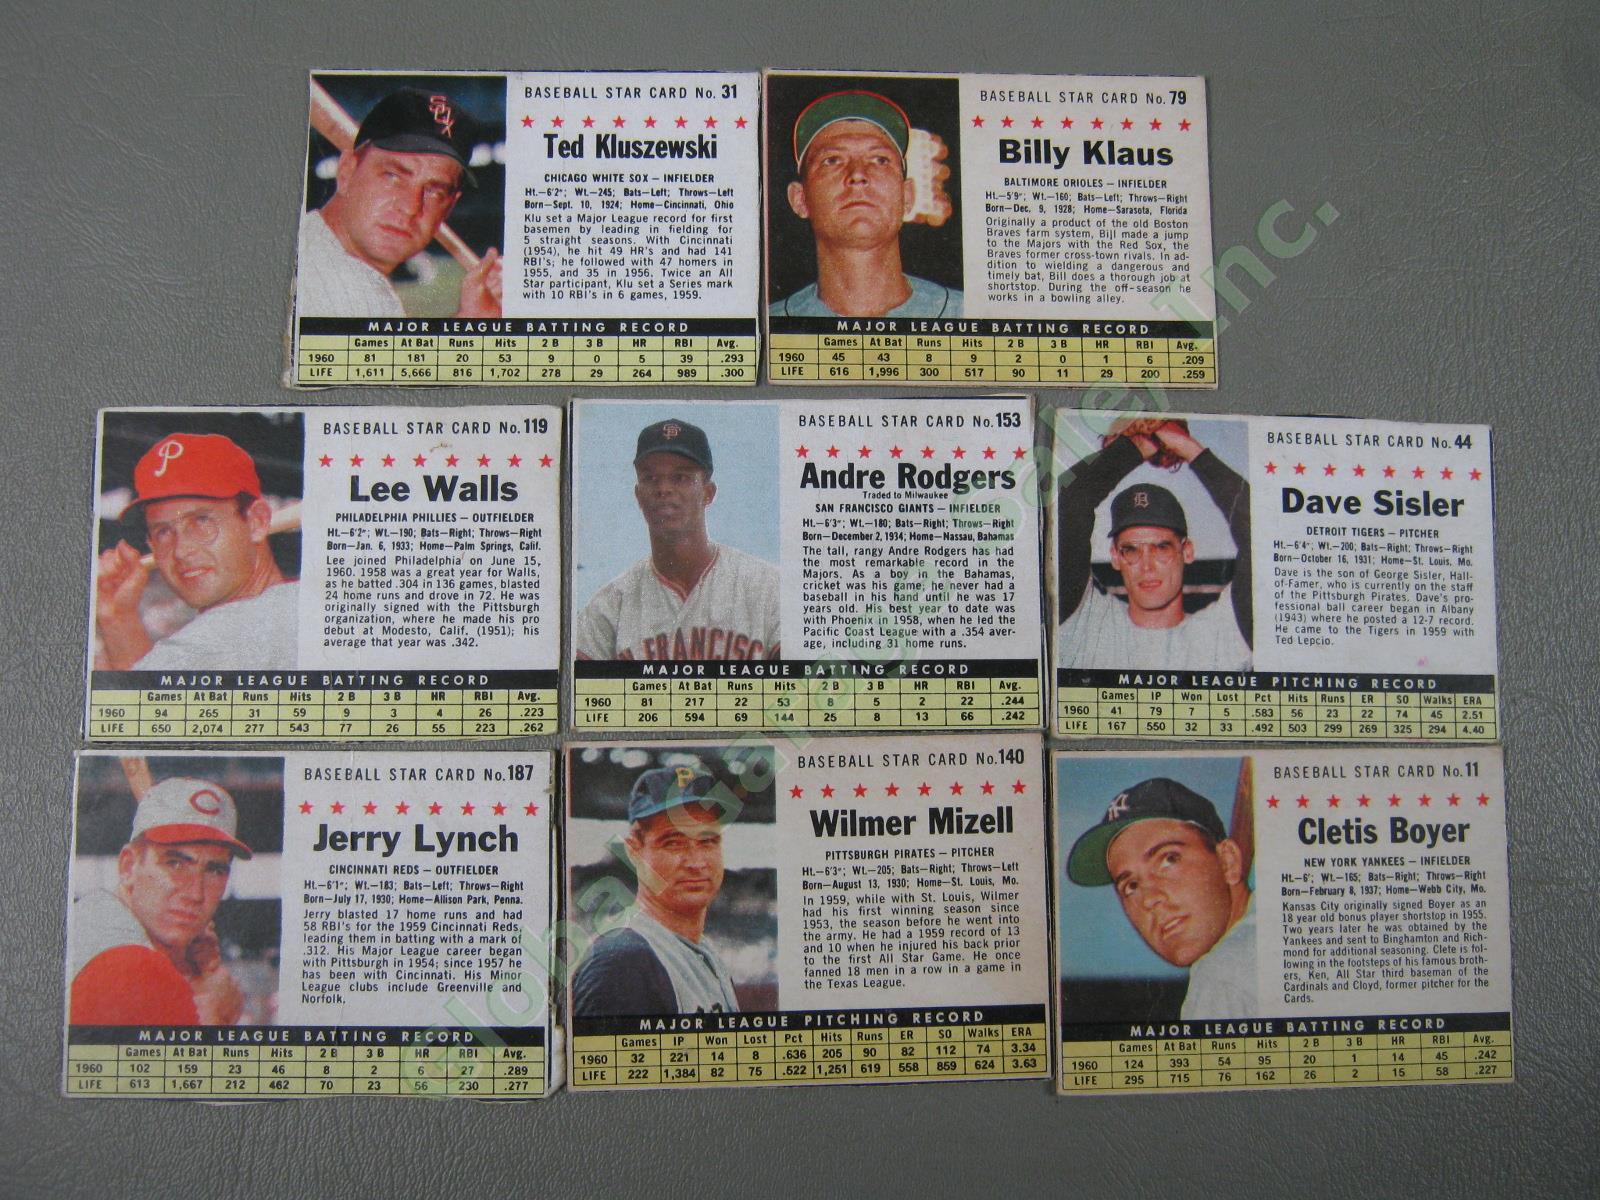 160 Vtg 1961 1962 1963 Topps Baseball Card Lot w/ RBI Home Run Leaders + VG-EX 36